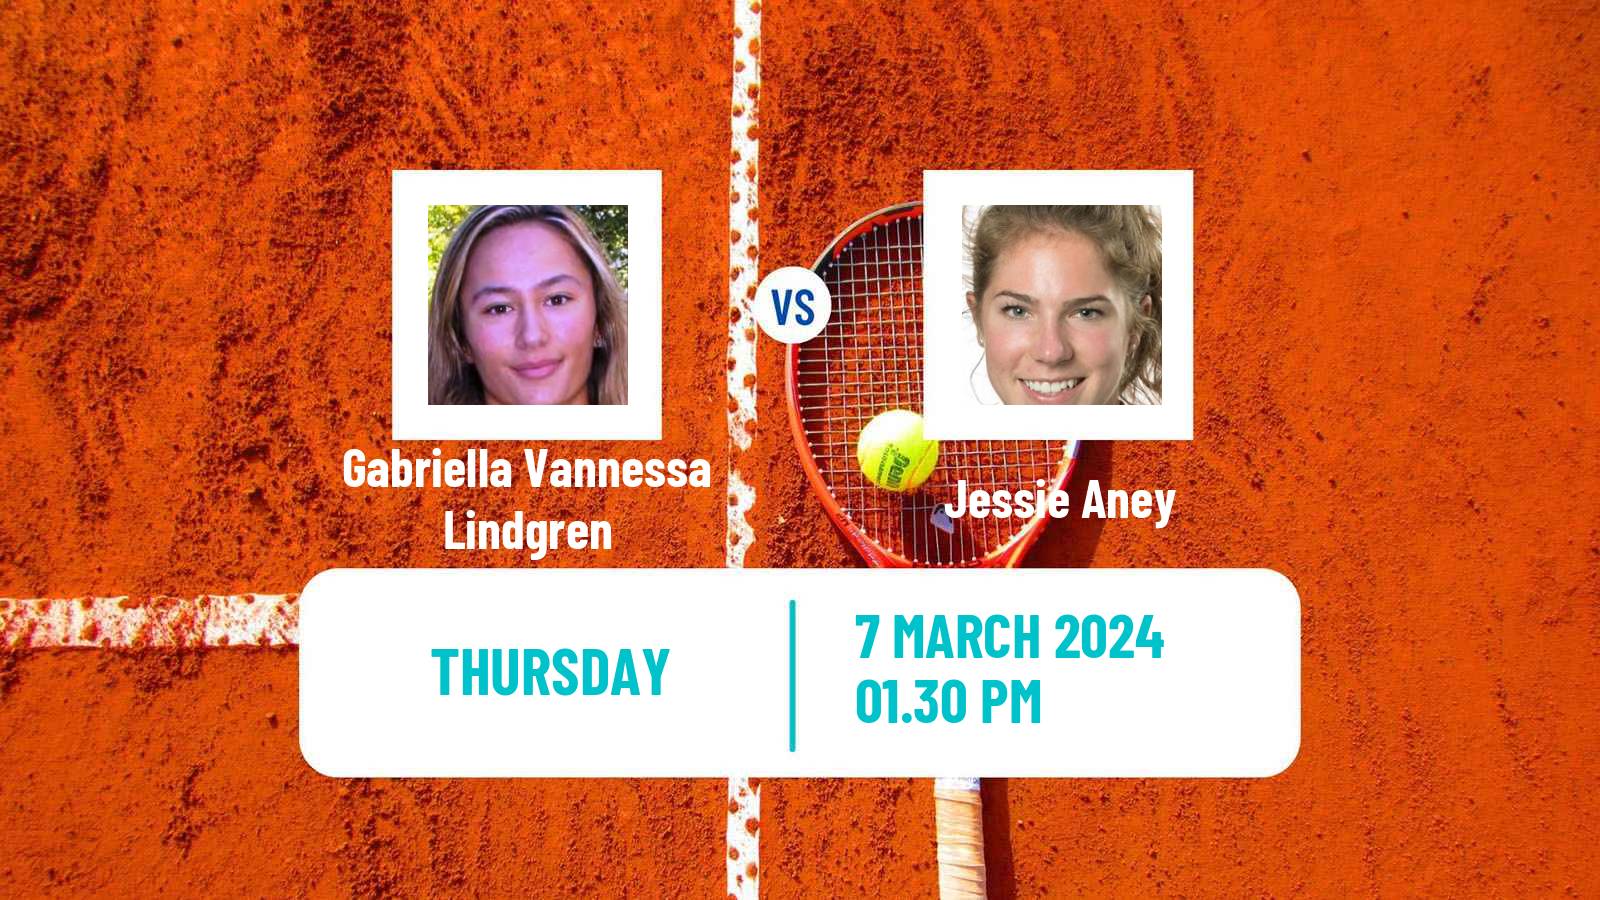 Tennis ITF W15 Brossard Women Gabriella Vannessa Lindgren - Jessie Aney